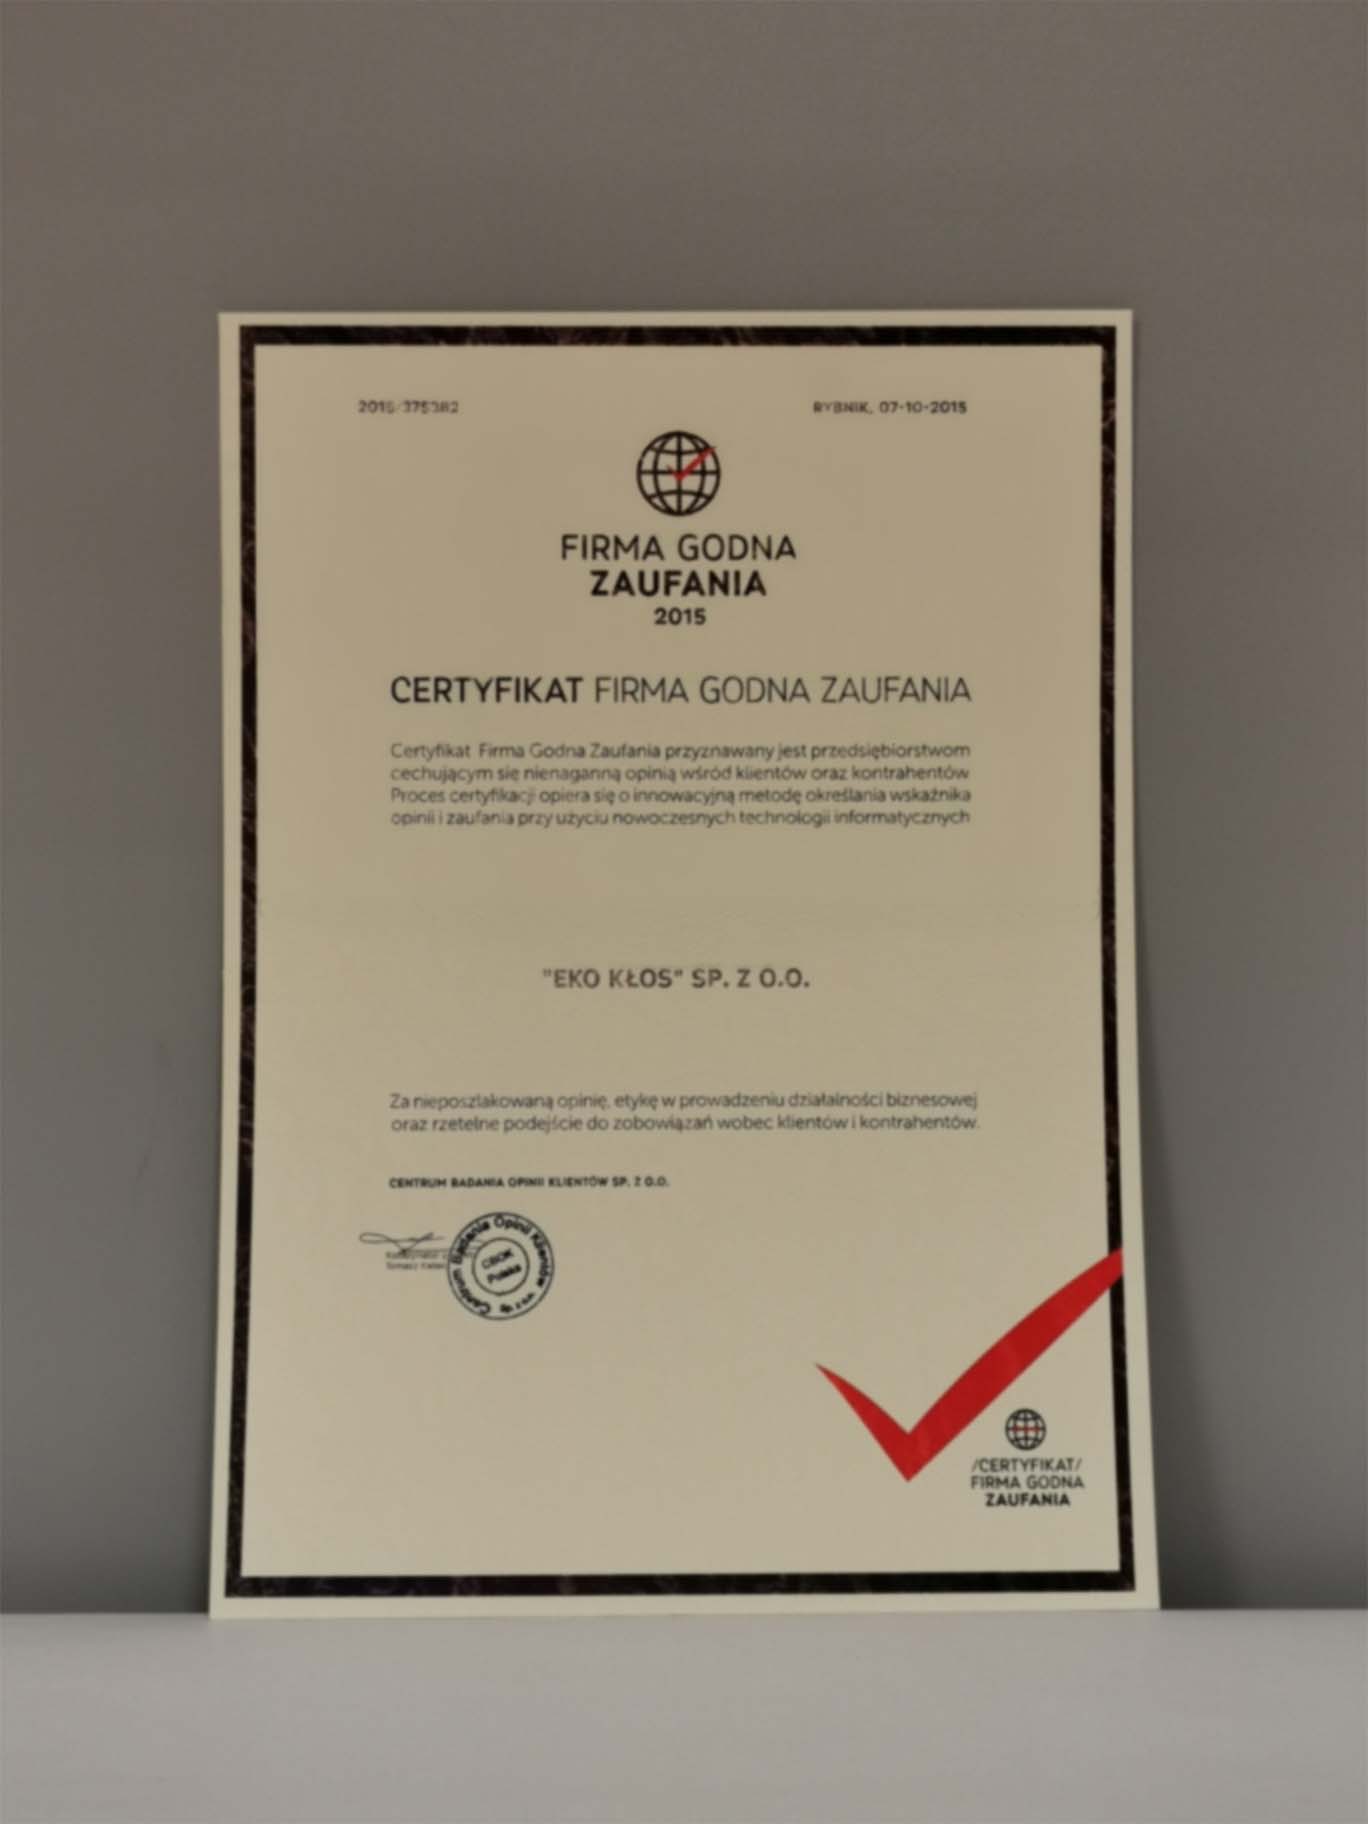 Certyfikat Firma Godna Zaufania 2015